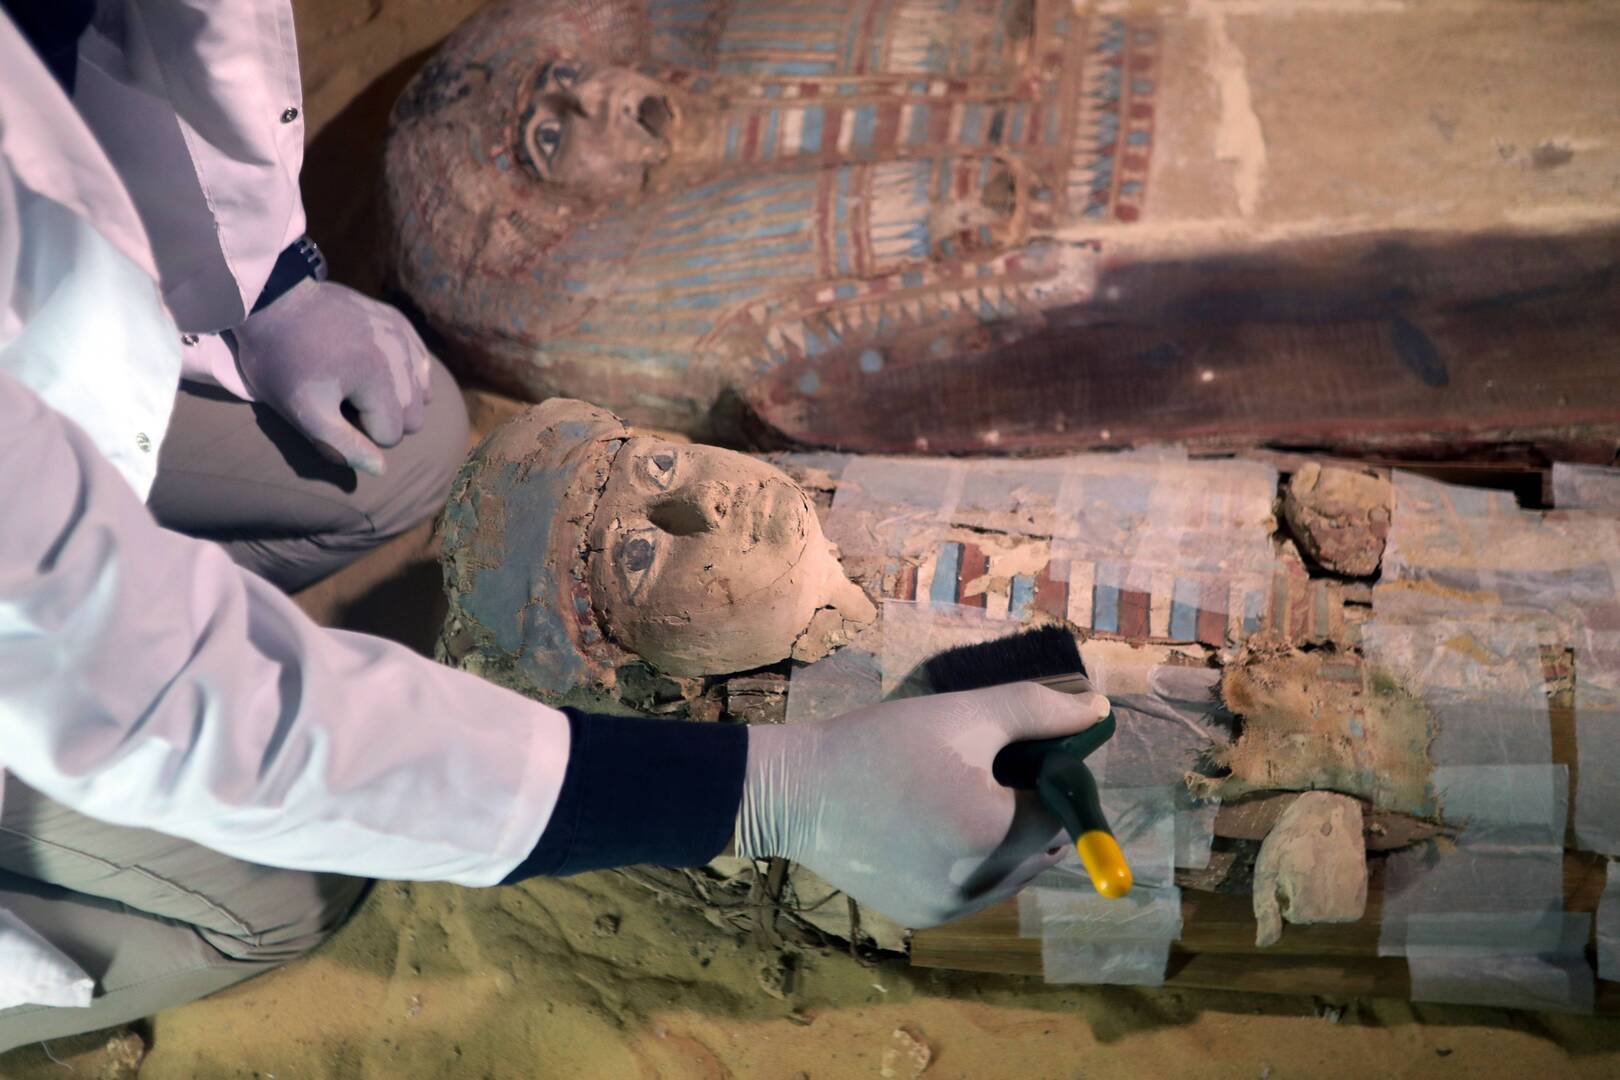 عالم مصري: الحضارة المصرية عقدة اليهود التاريخية ومستهدفة منذ قديم الزمن (فيديو)